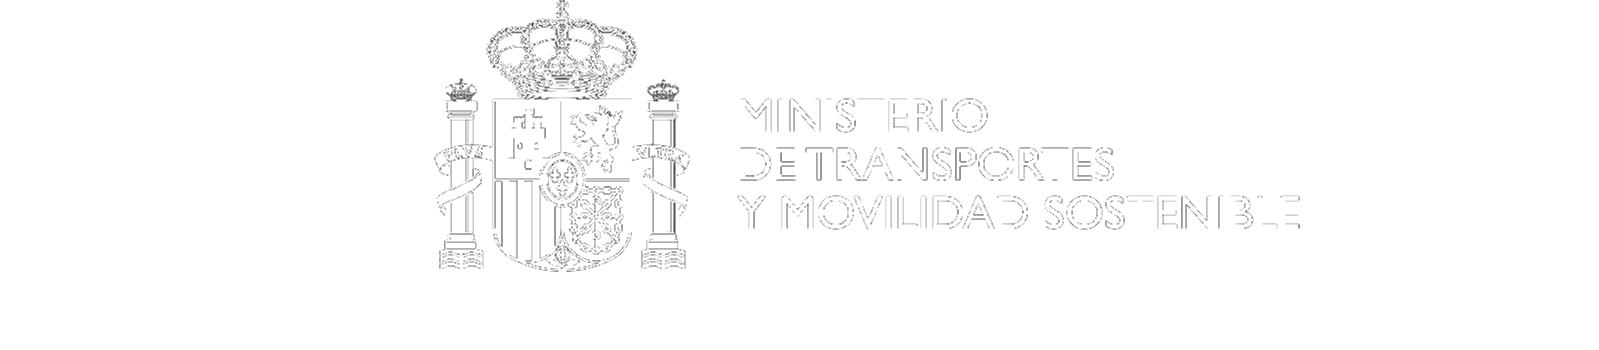 Gobierno de España - Ministerio de Transportes y Movilidad Sostenible